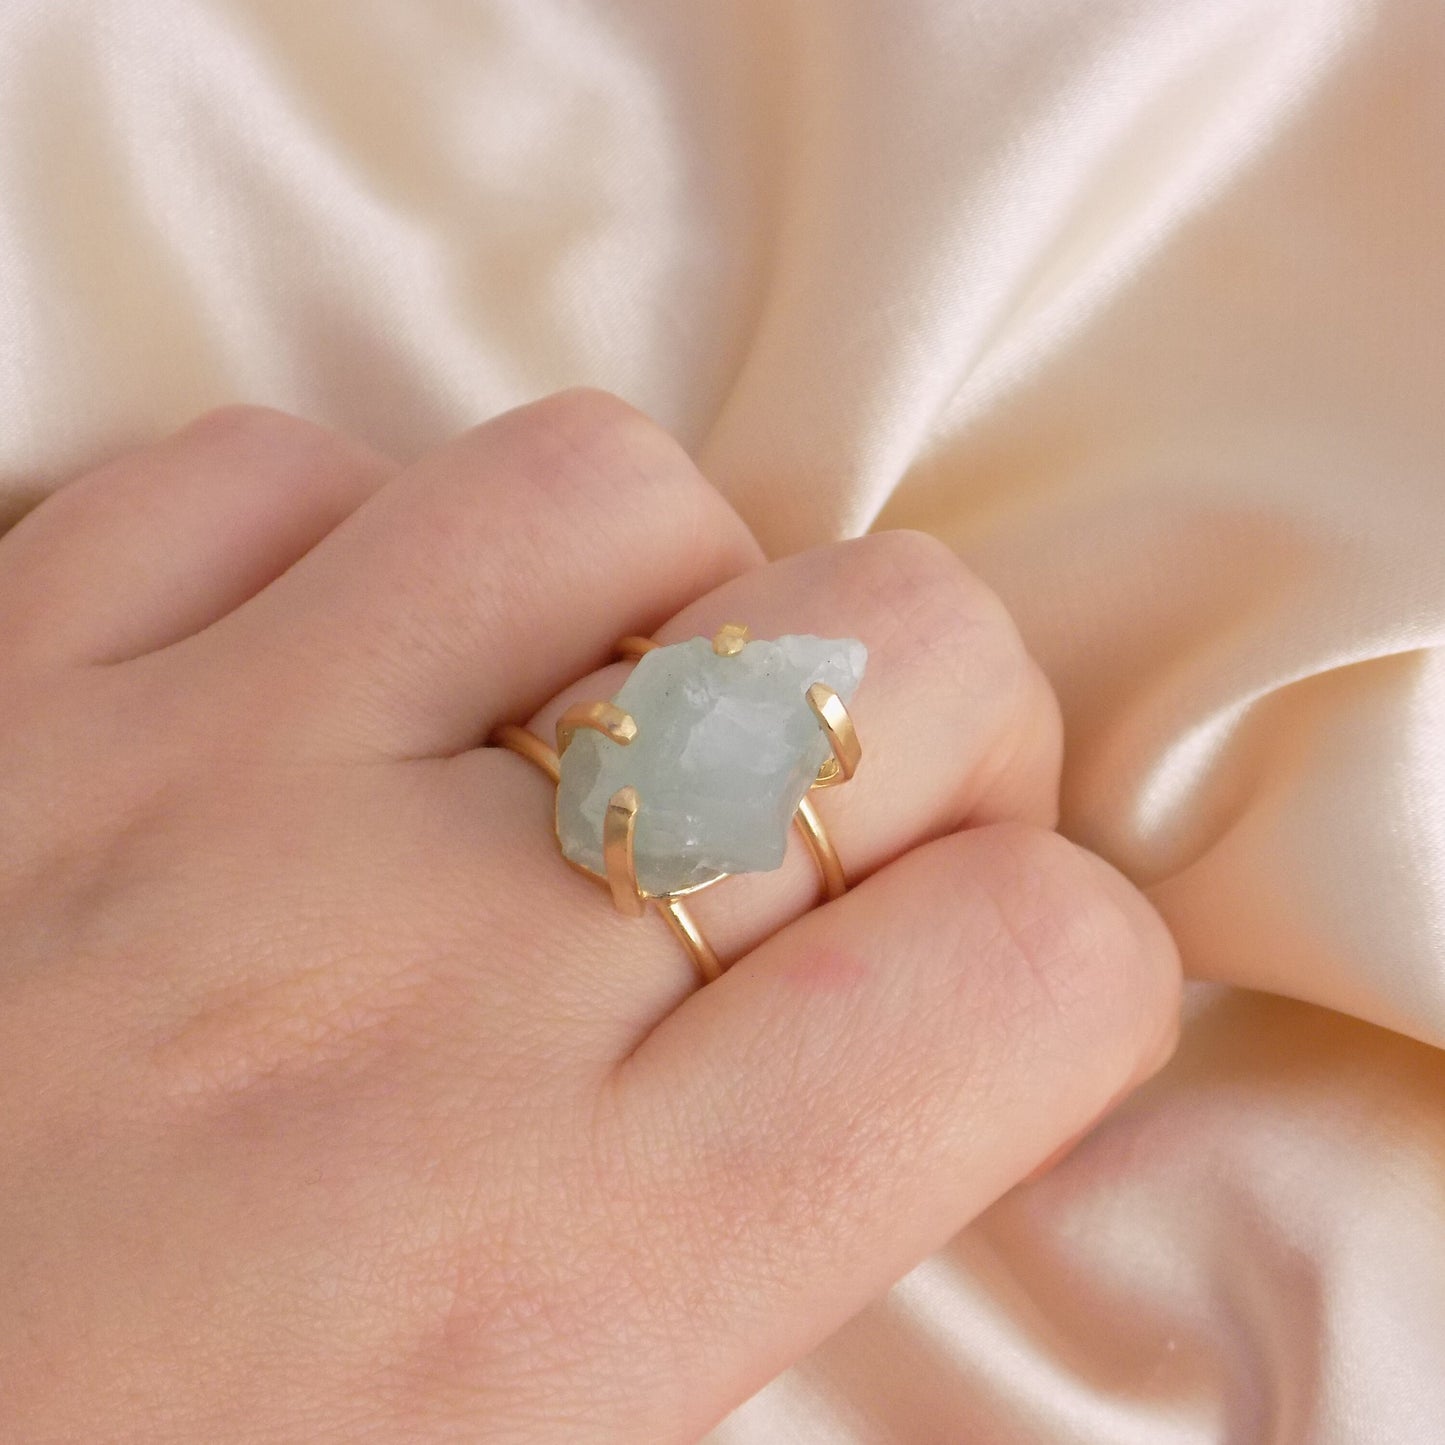 Raw Aquamarine Gemstone Ring Gold Plated Adjustable Band - Light Blue Crystal Jewelry Boho